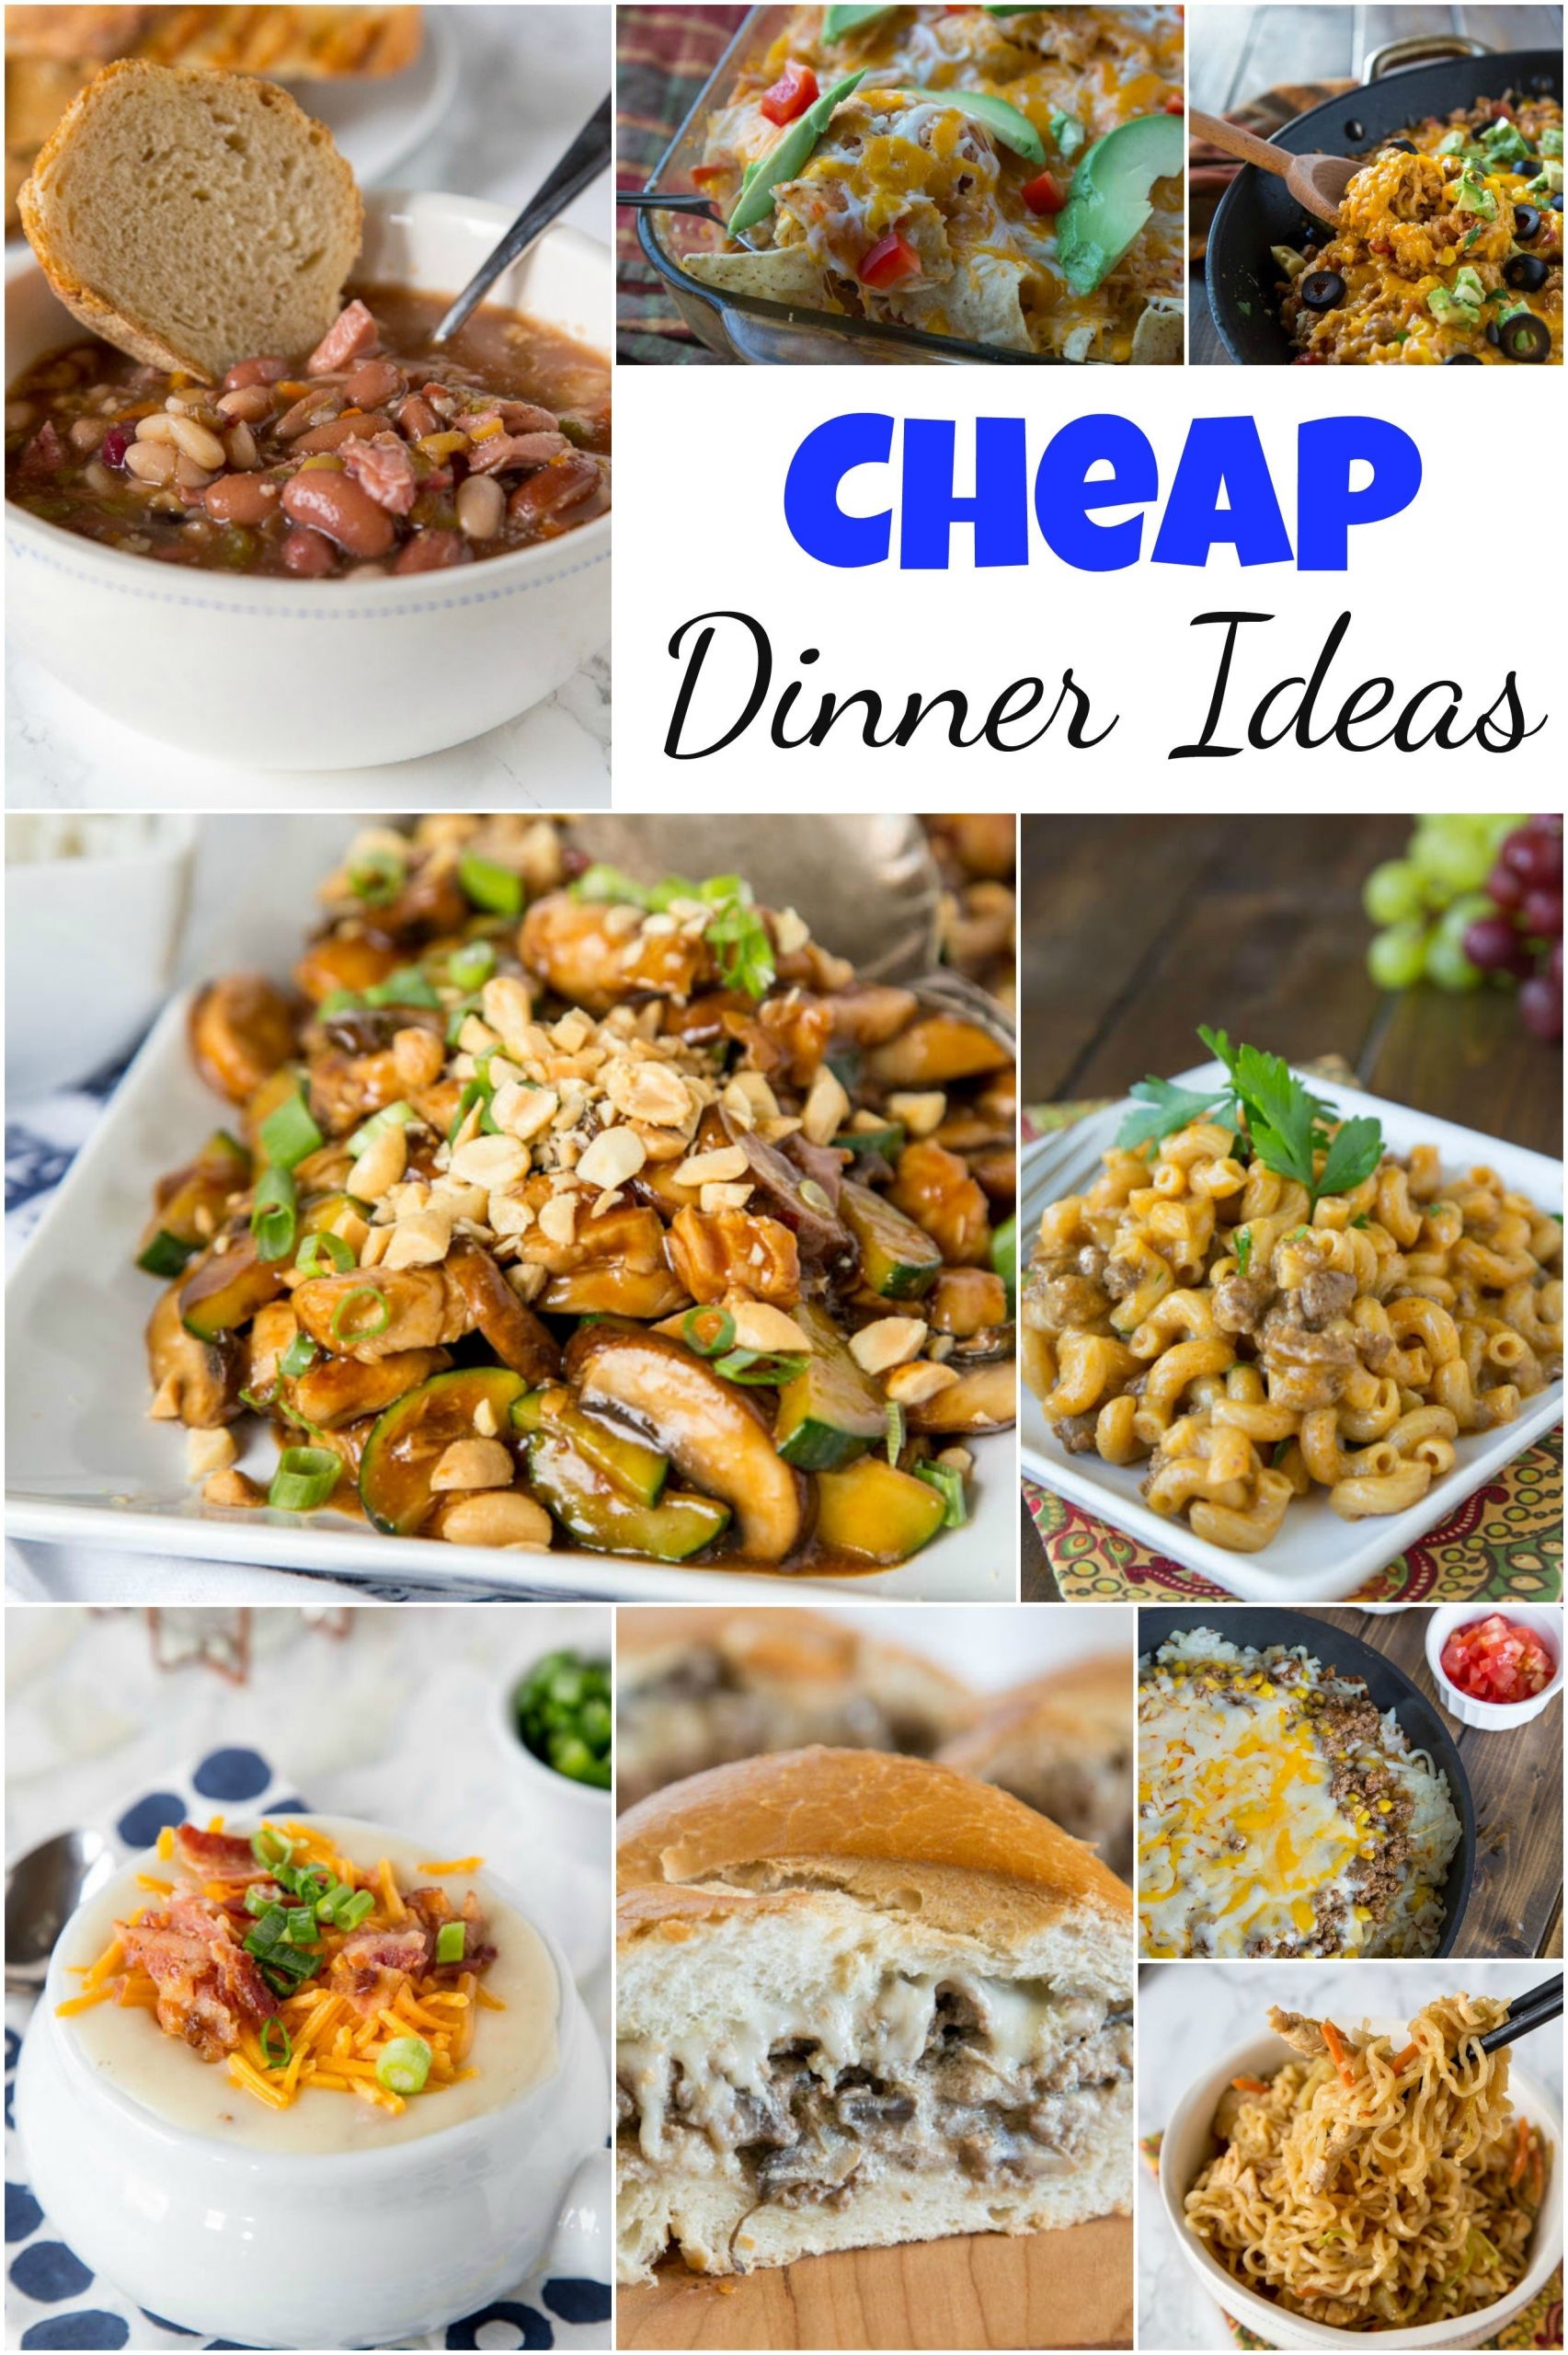 Cheap Dinner Ideas For 2
 10 Lovely Inexpensive Dinner Ideas For Two 2020